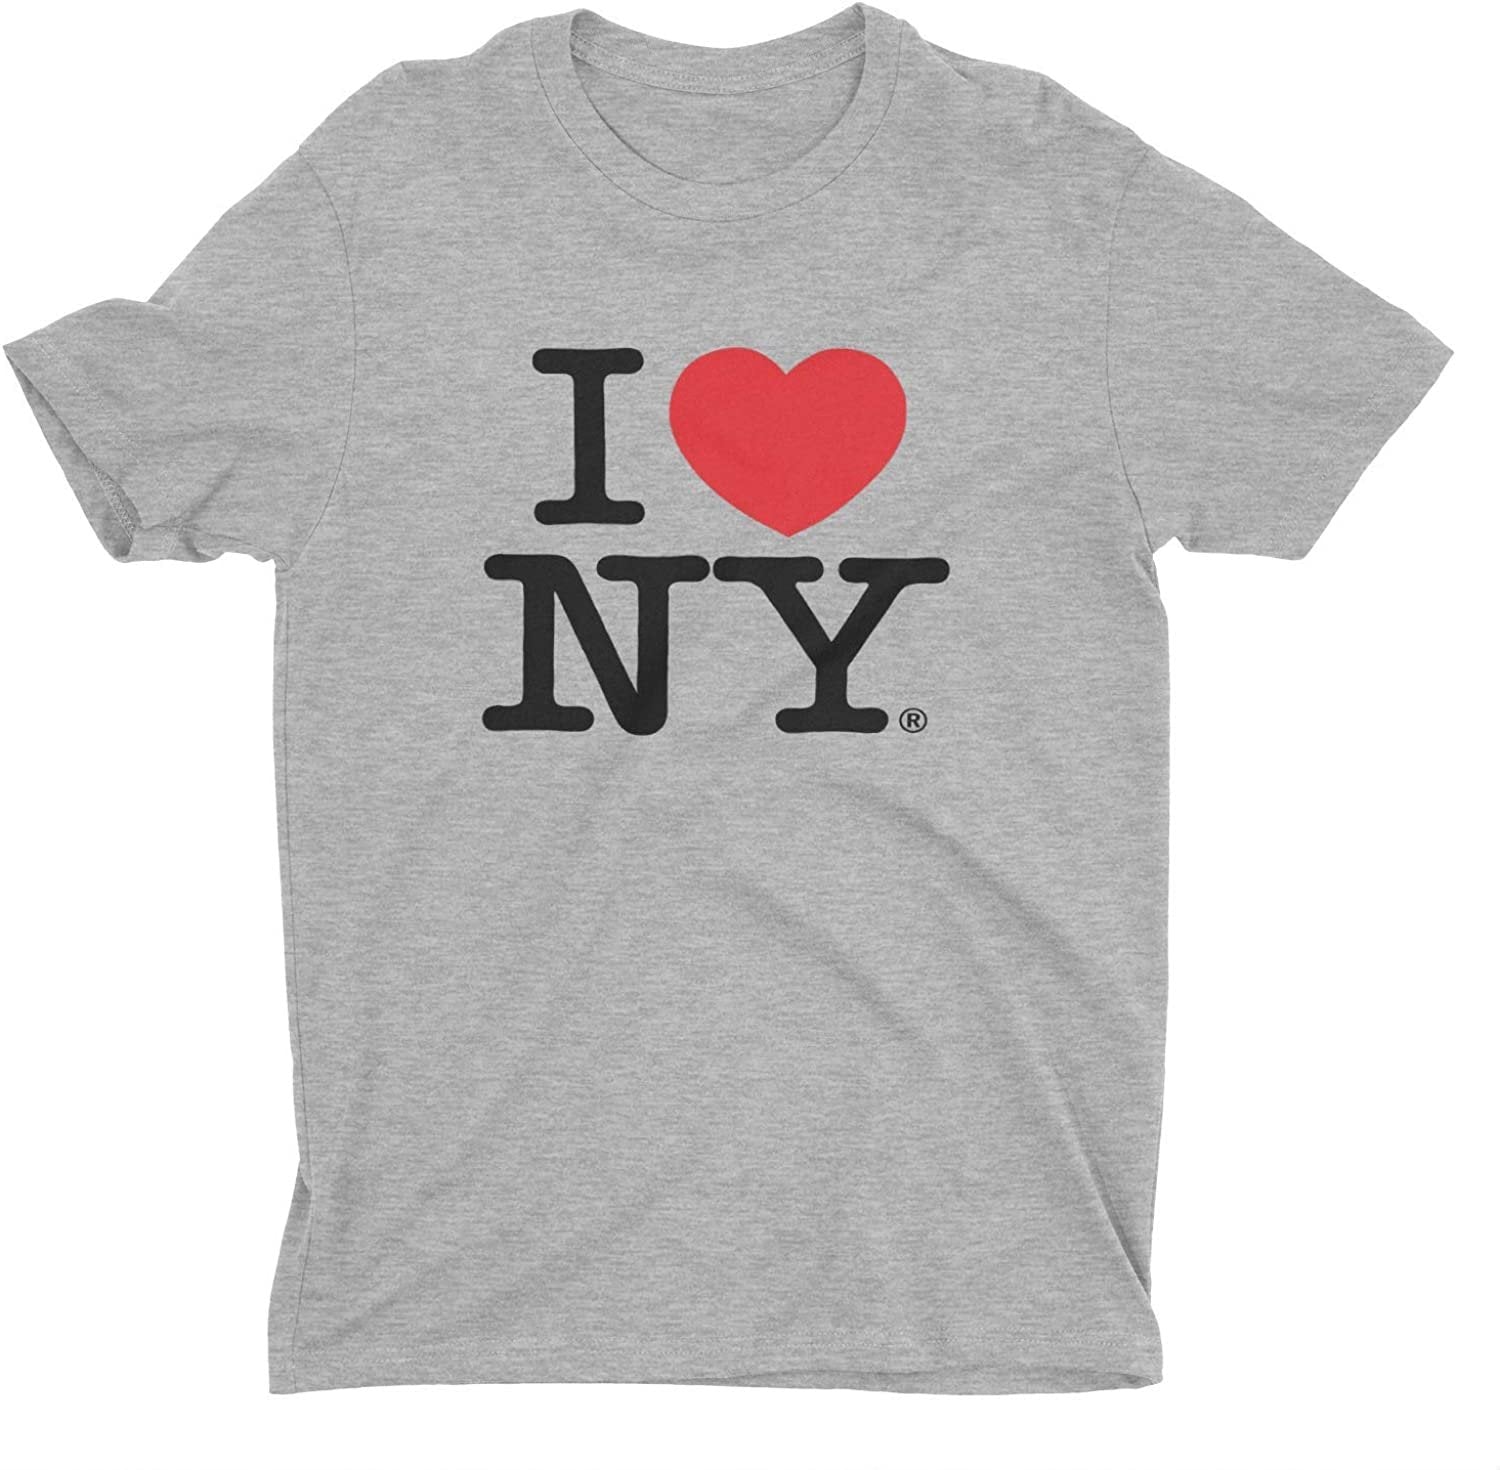 T-shirt rétro vintage I Love NY gris chiné